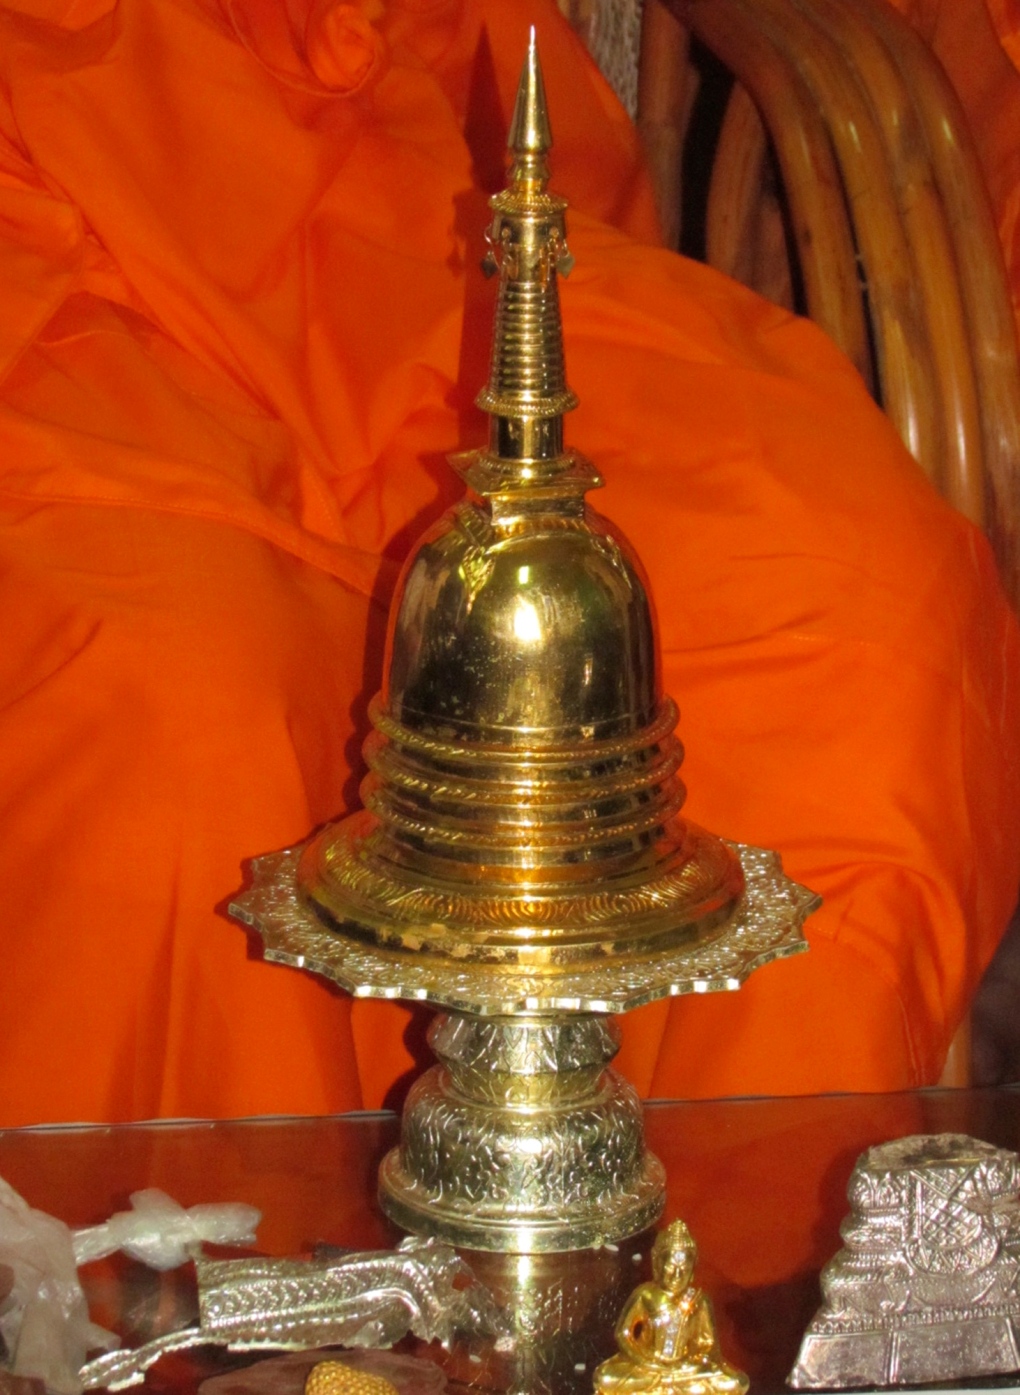 Stolen Buddha urn